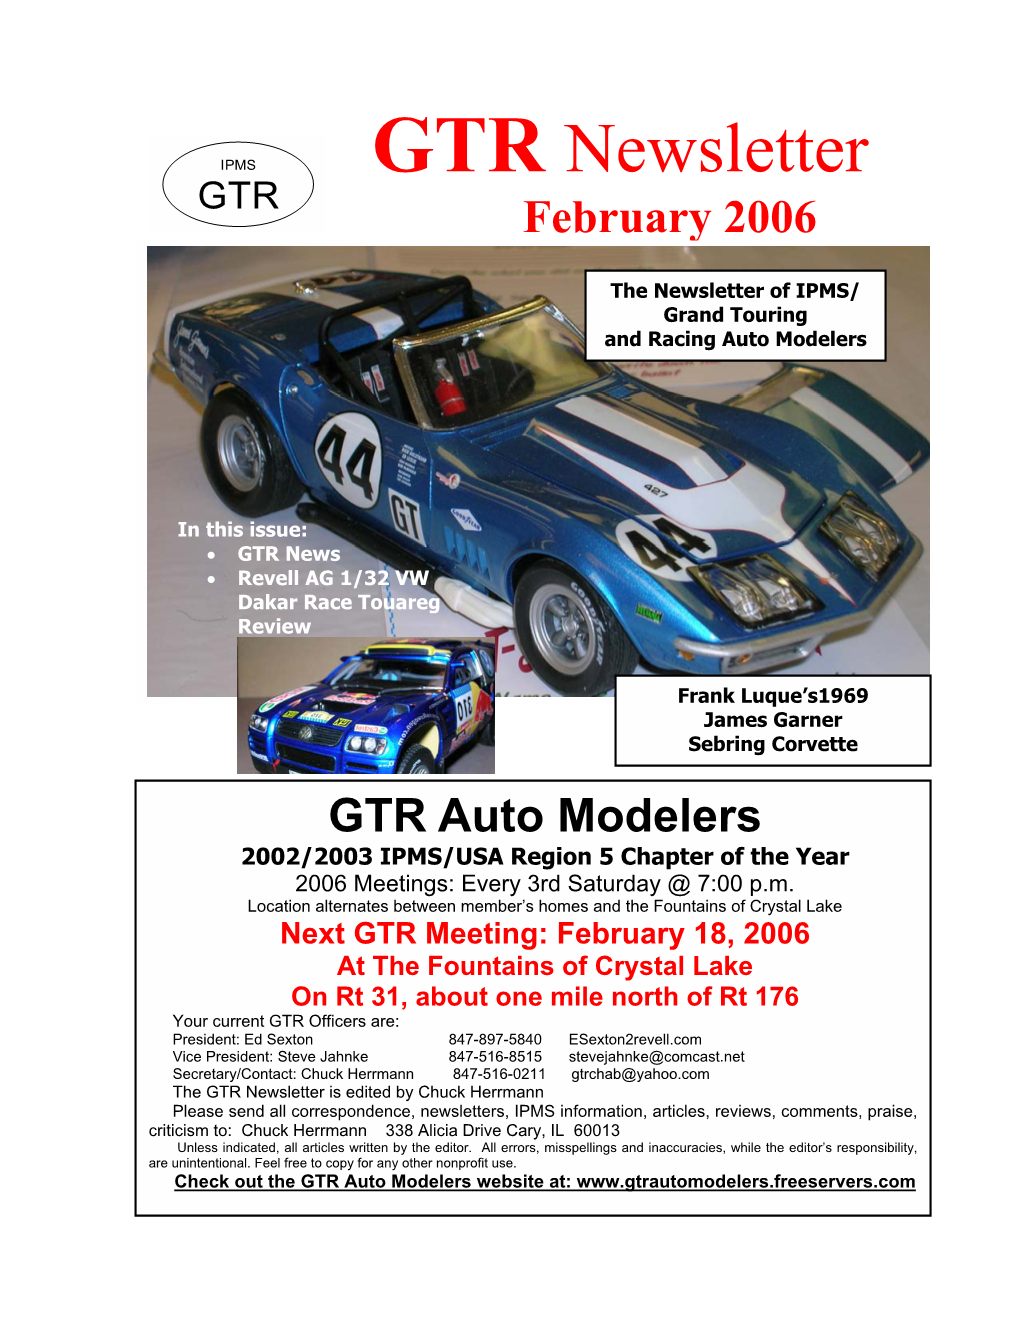 GTR Newsletter GTR February 2006